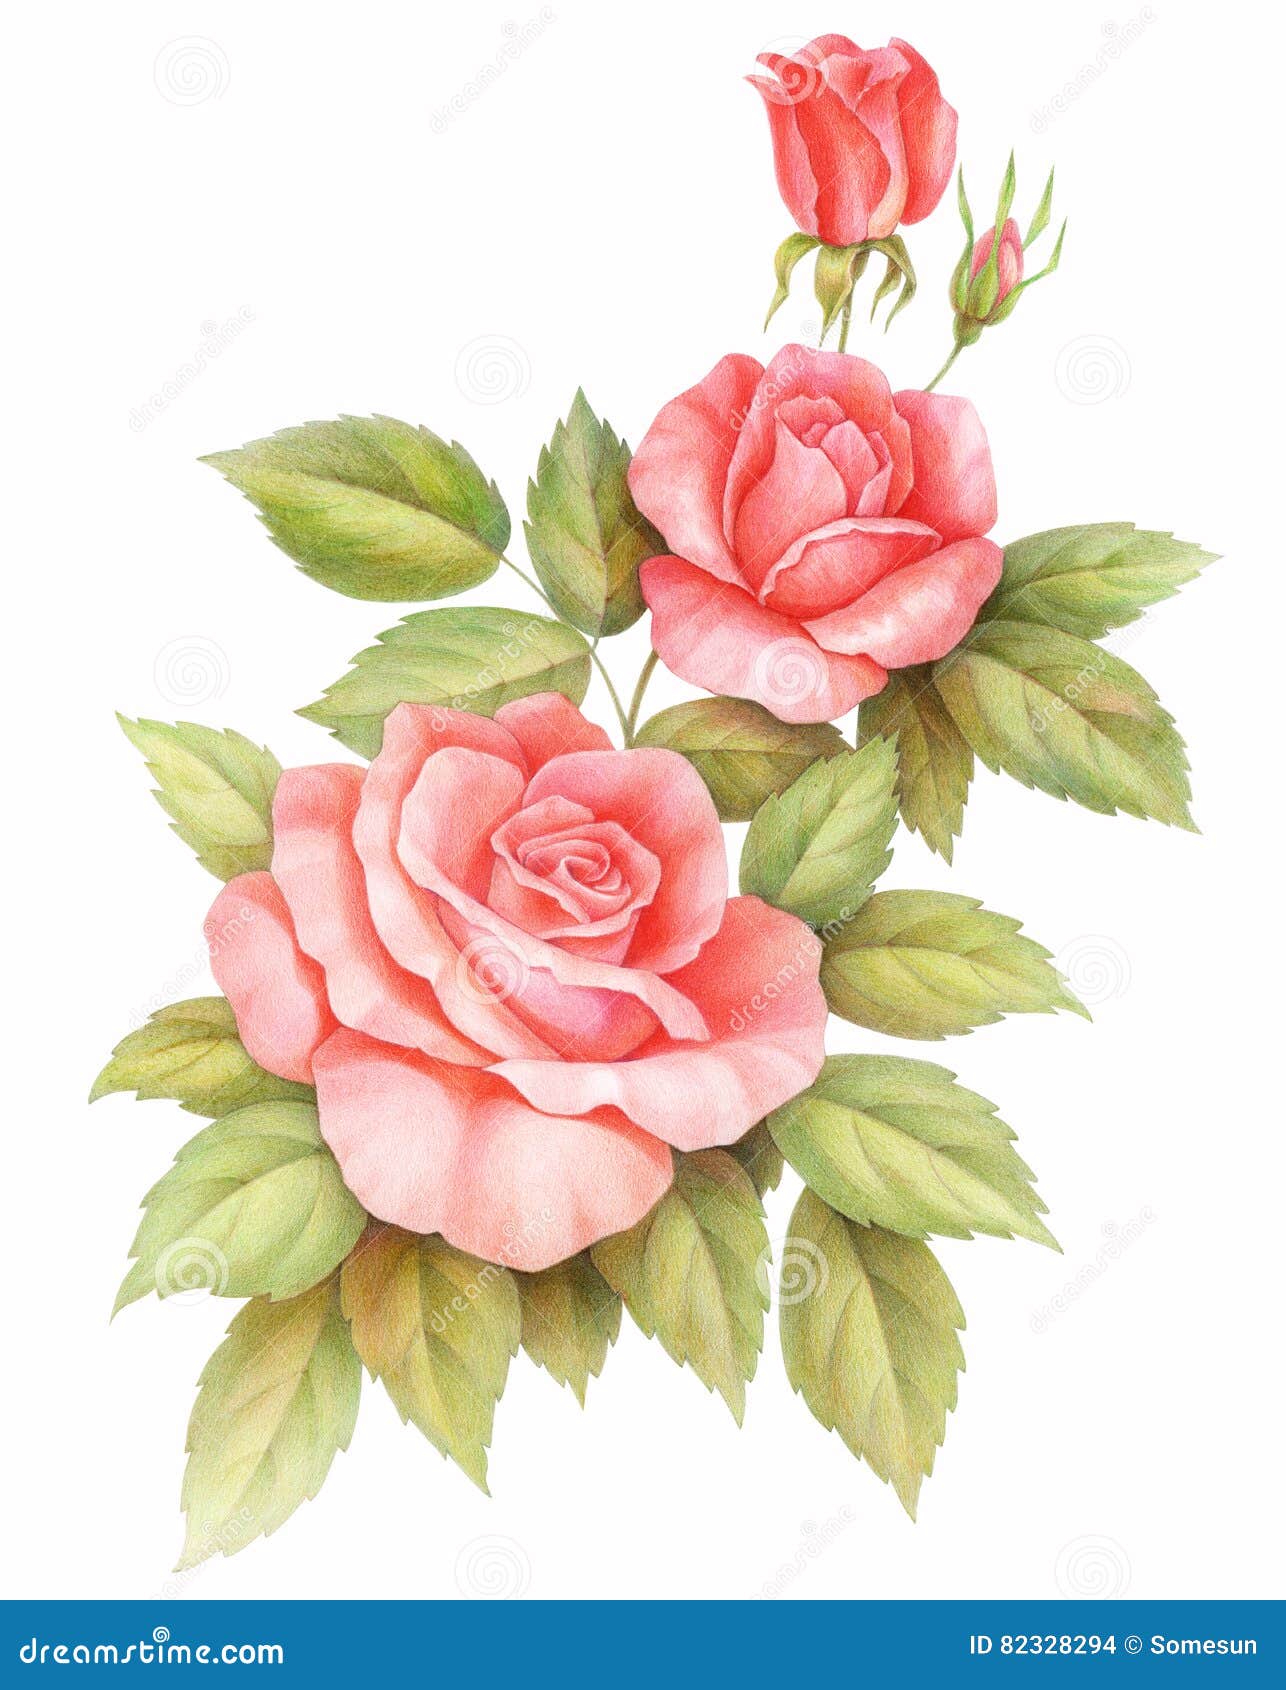 Hoa hồng cổ điển đỏ hồng trên nền trắng sẽ làm cho bạn tưởng nhớ về những khoảnh khắc lãng mạn và đầy kỷ niệm. Với tông màu tinh tế và đẳng cấp từ hoa hồng cổ điển, bạn sẽ không thể rời mắt khỏi những hình ảnh tuyệt đẹp này.